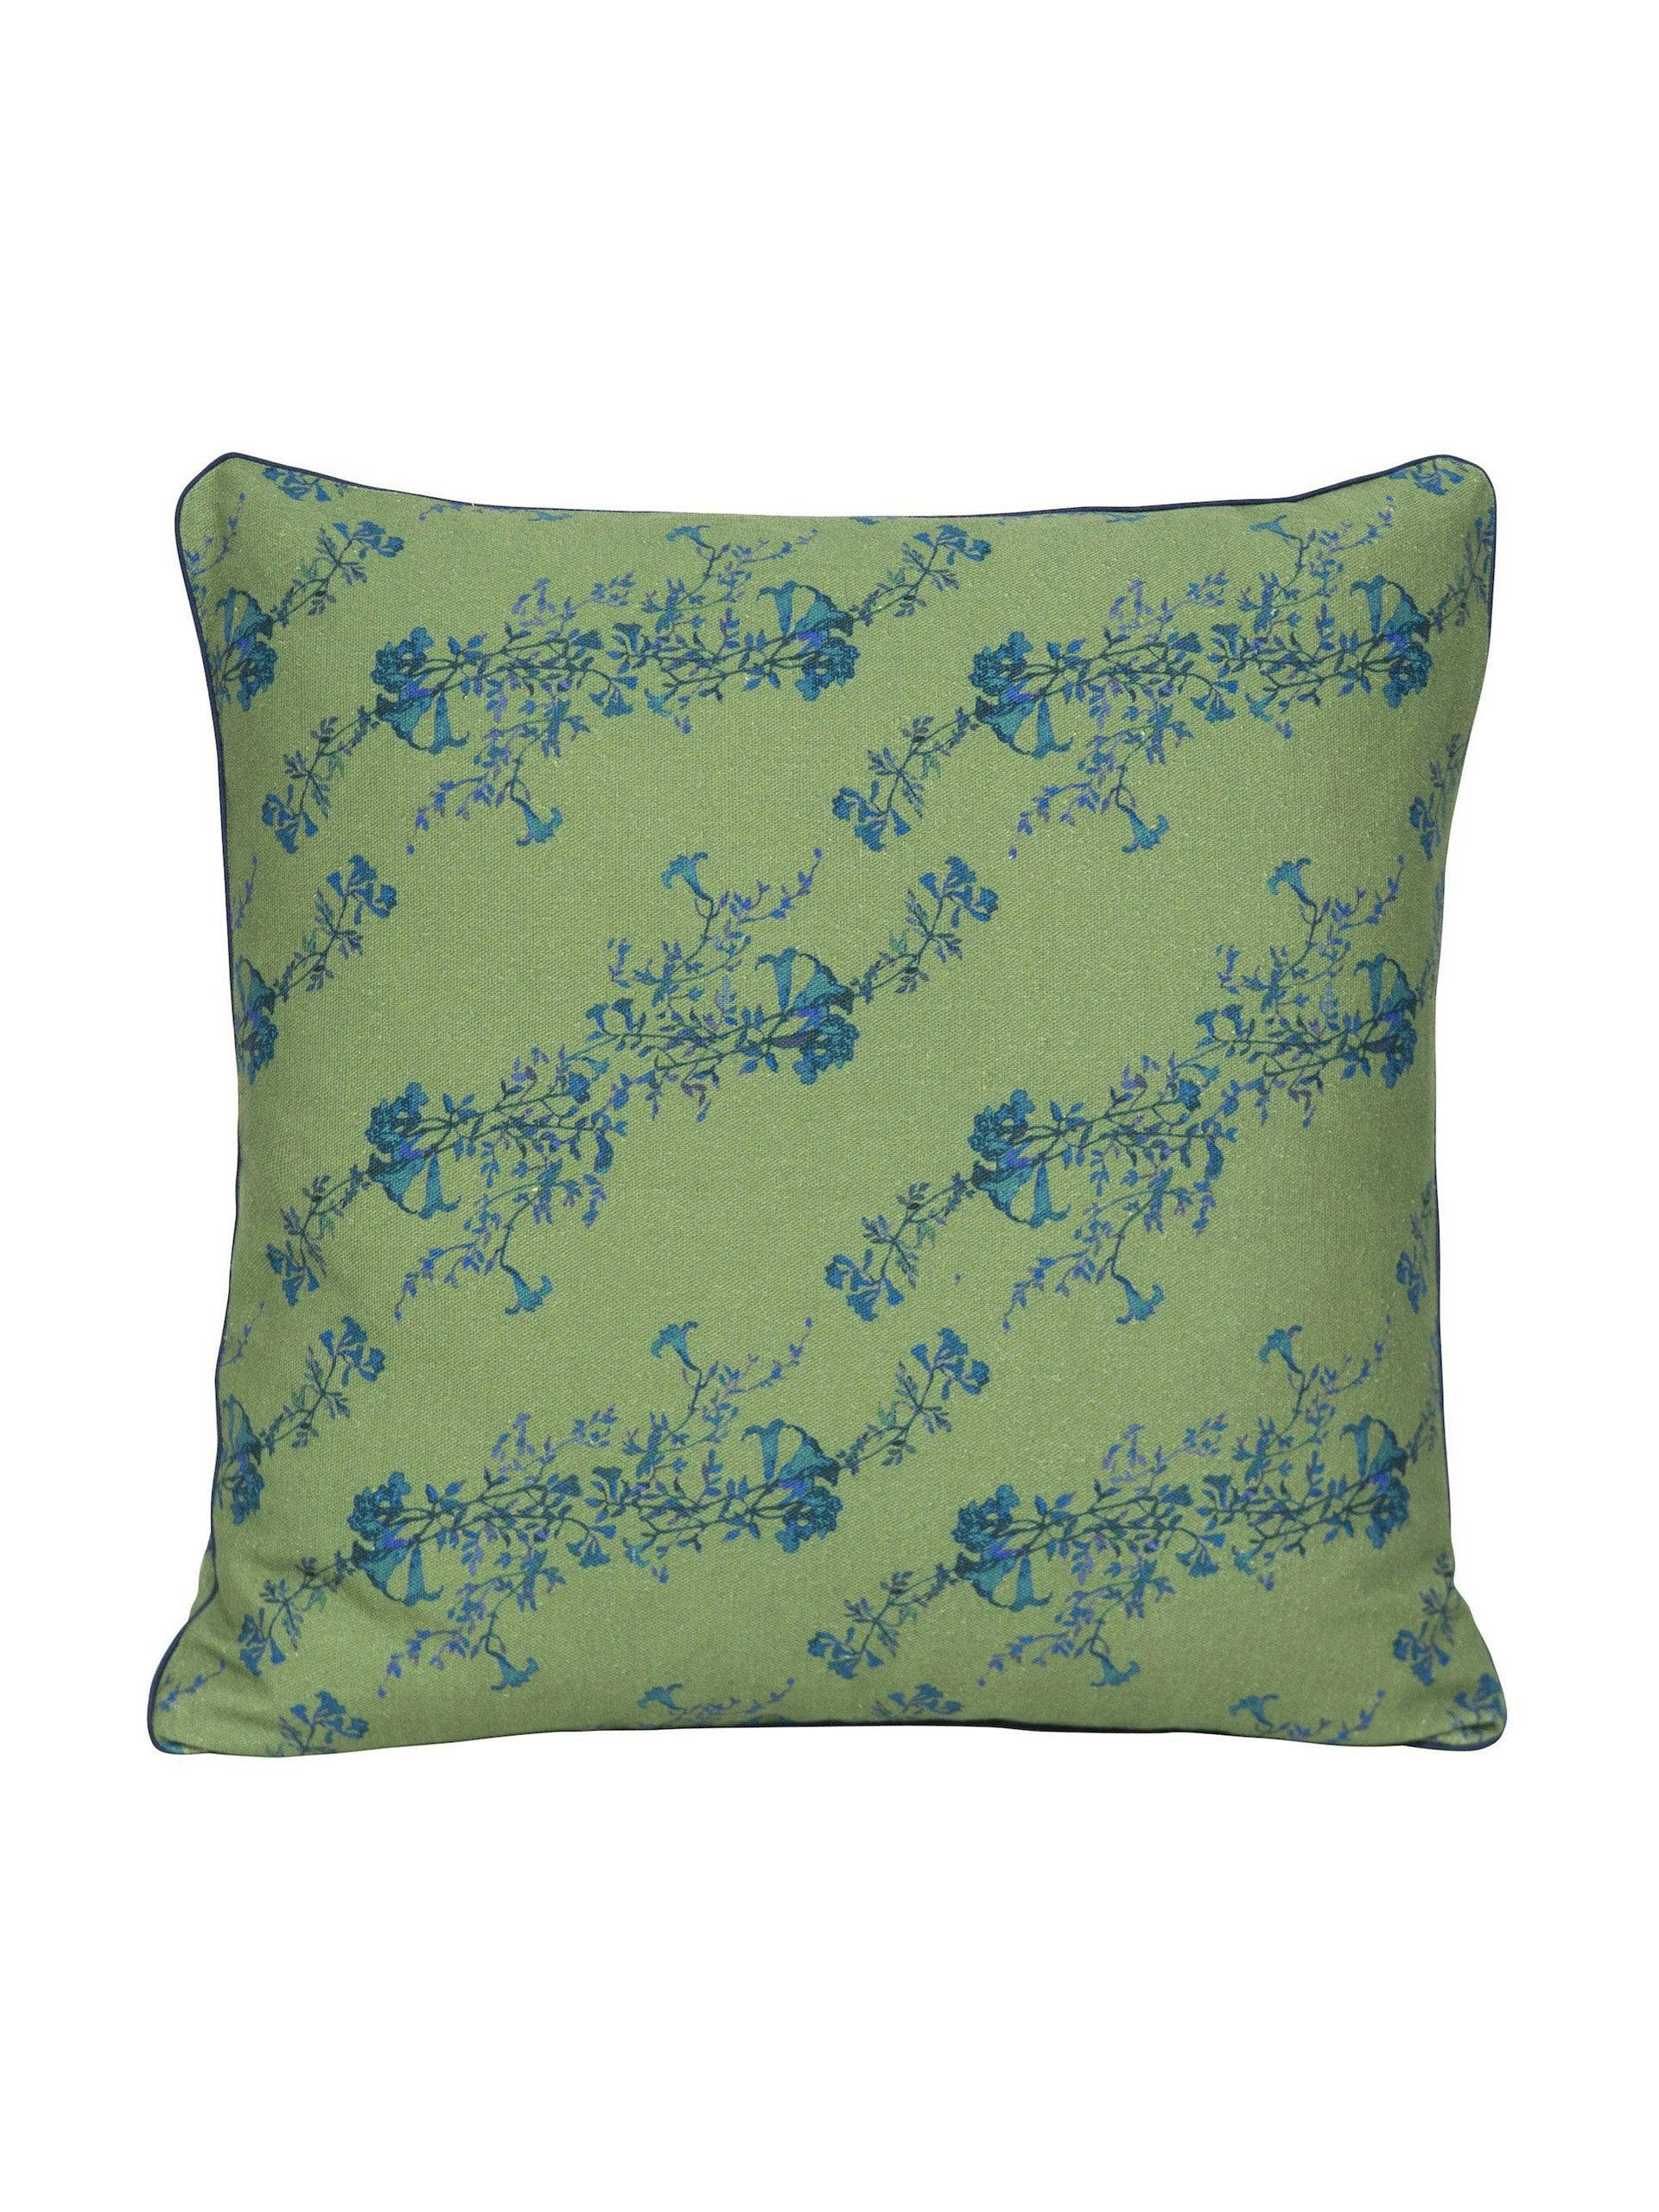 Green floral print linen cushion